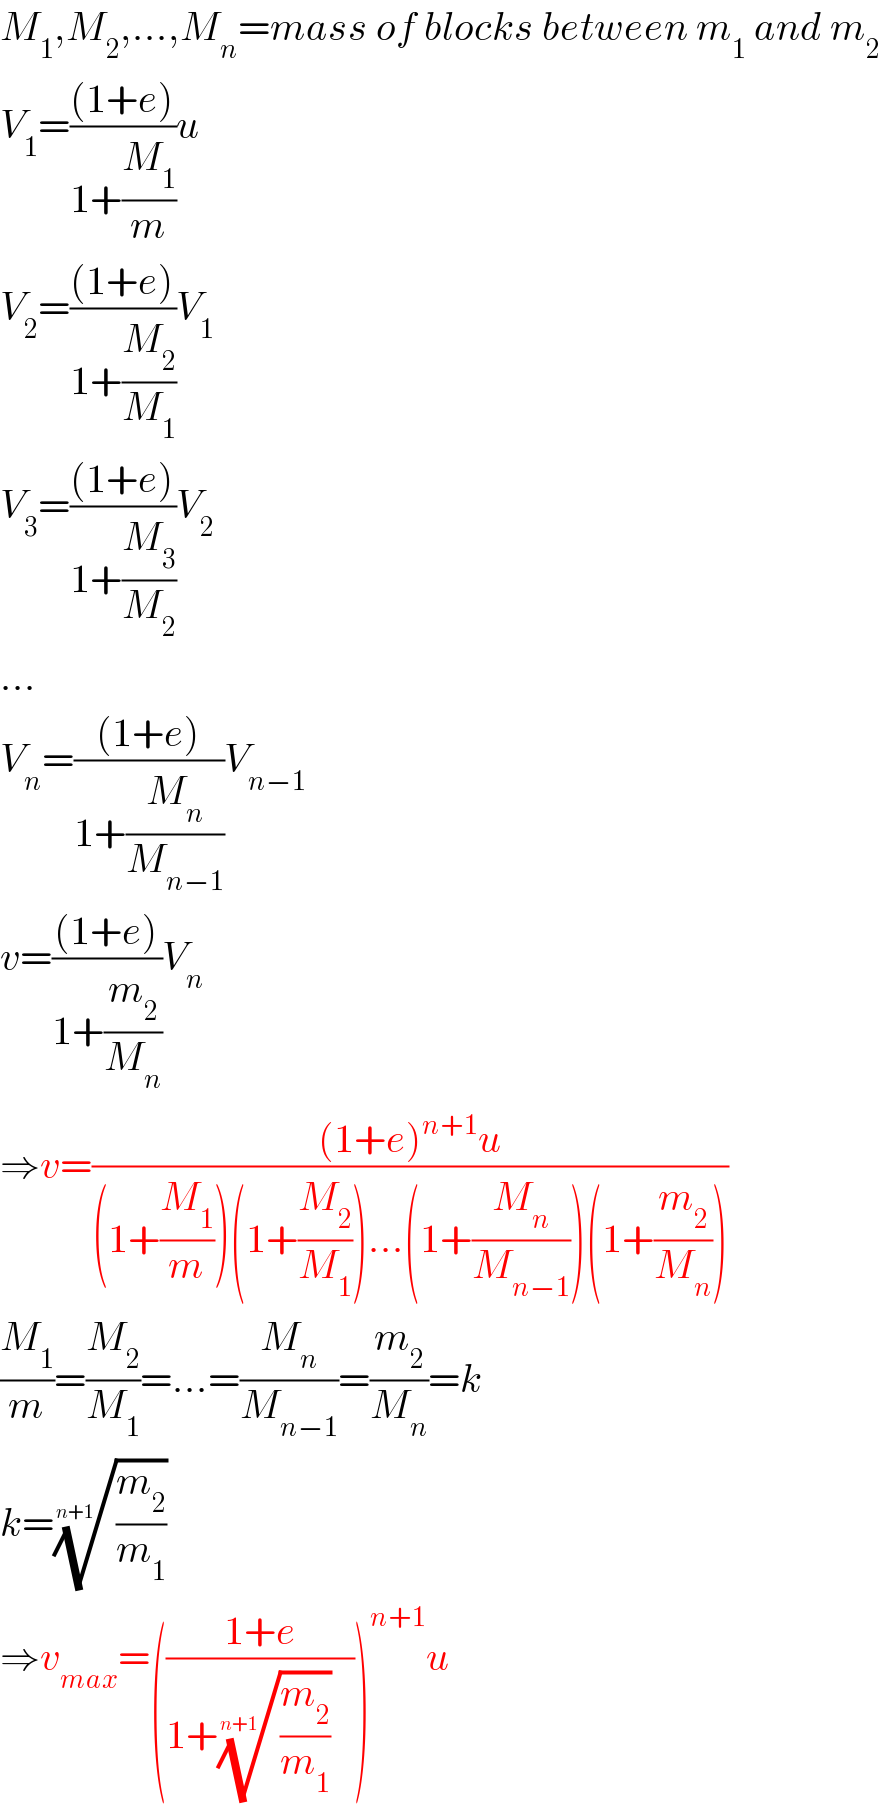 M_1 ,M_2 ,...,M_n =mass of blocks between m_1  and m_2   V_1 =(((1+e))/(1+(M_1 /m)))u  V_2 =(((1+e))/(1+(M_2 /M_1 )))V_1   V_3 =(((1+e))/(1+(M_3 /M_2 )))V_2   ...  V_n =(((1+e))/(1+(M_n /M_(n−1) )))V_(n−1)   v=(((1+e))/(1+(m_2 /M_n )))V_n   ⇒v=(((1+e)^(n+1) u)/((1+(M_1 /m))(1+(M_2 /M_1 ))...(1+(M_n /M_(n−1) ))(1+(m_2 /M_n ))))  (M_1 /m)=(M_2 /M_1 )=...=(M_n /M_(n−1) )=(m_2 /M_n )=k  k=((m_2 /m_1 ))^(1/(n+1))   ⇒v_(max) =(((1+e)/(1+((m_2 /m_1 ))^(1/(n+1)) )))^(n+1) u  